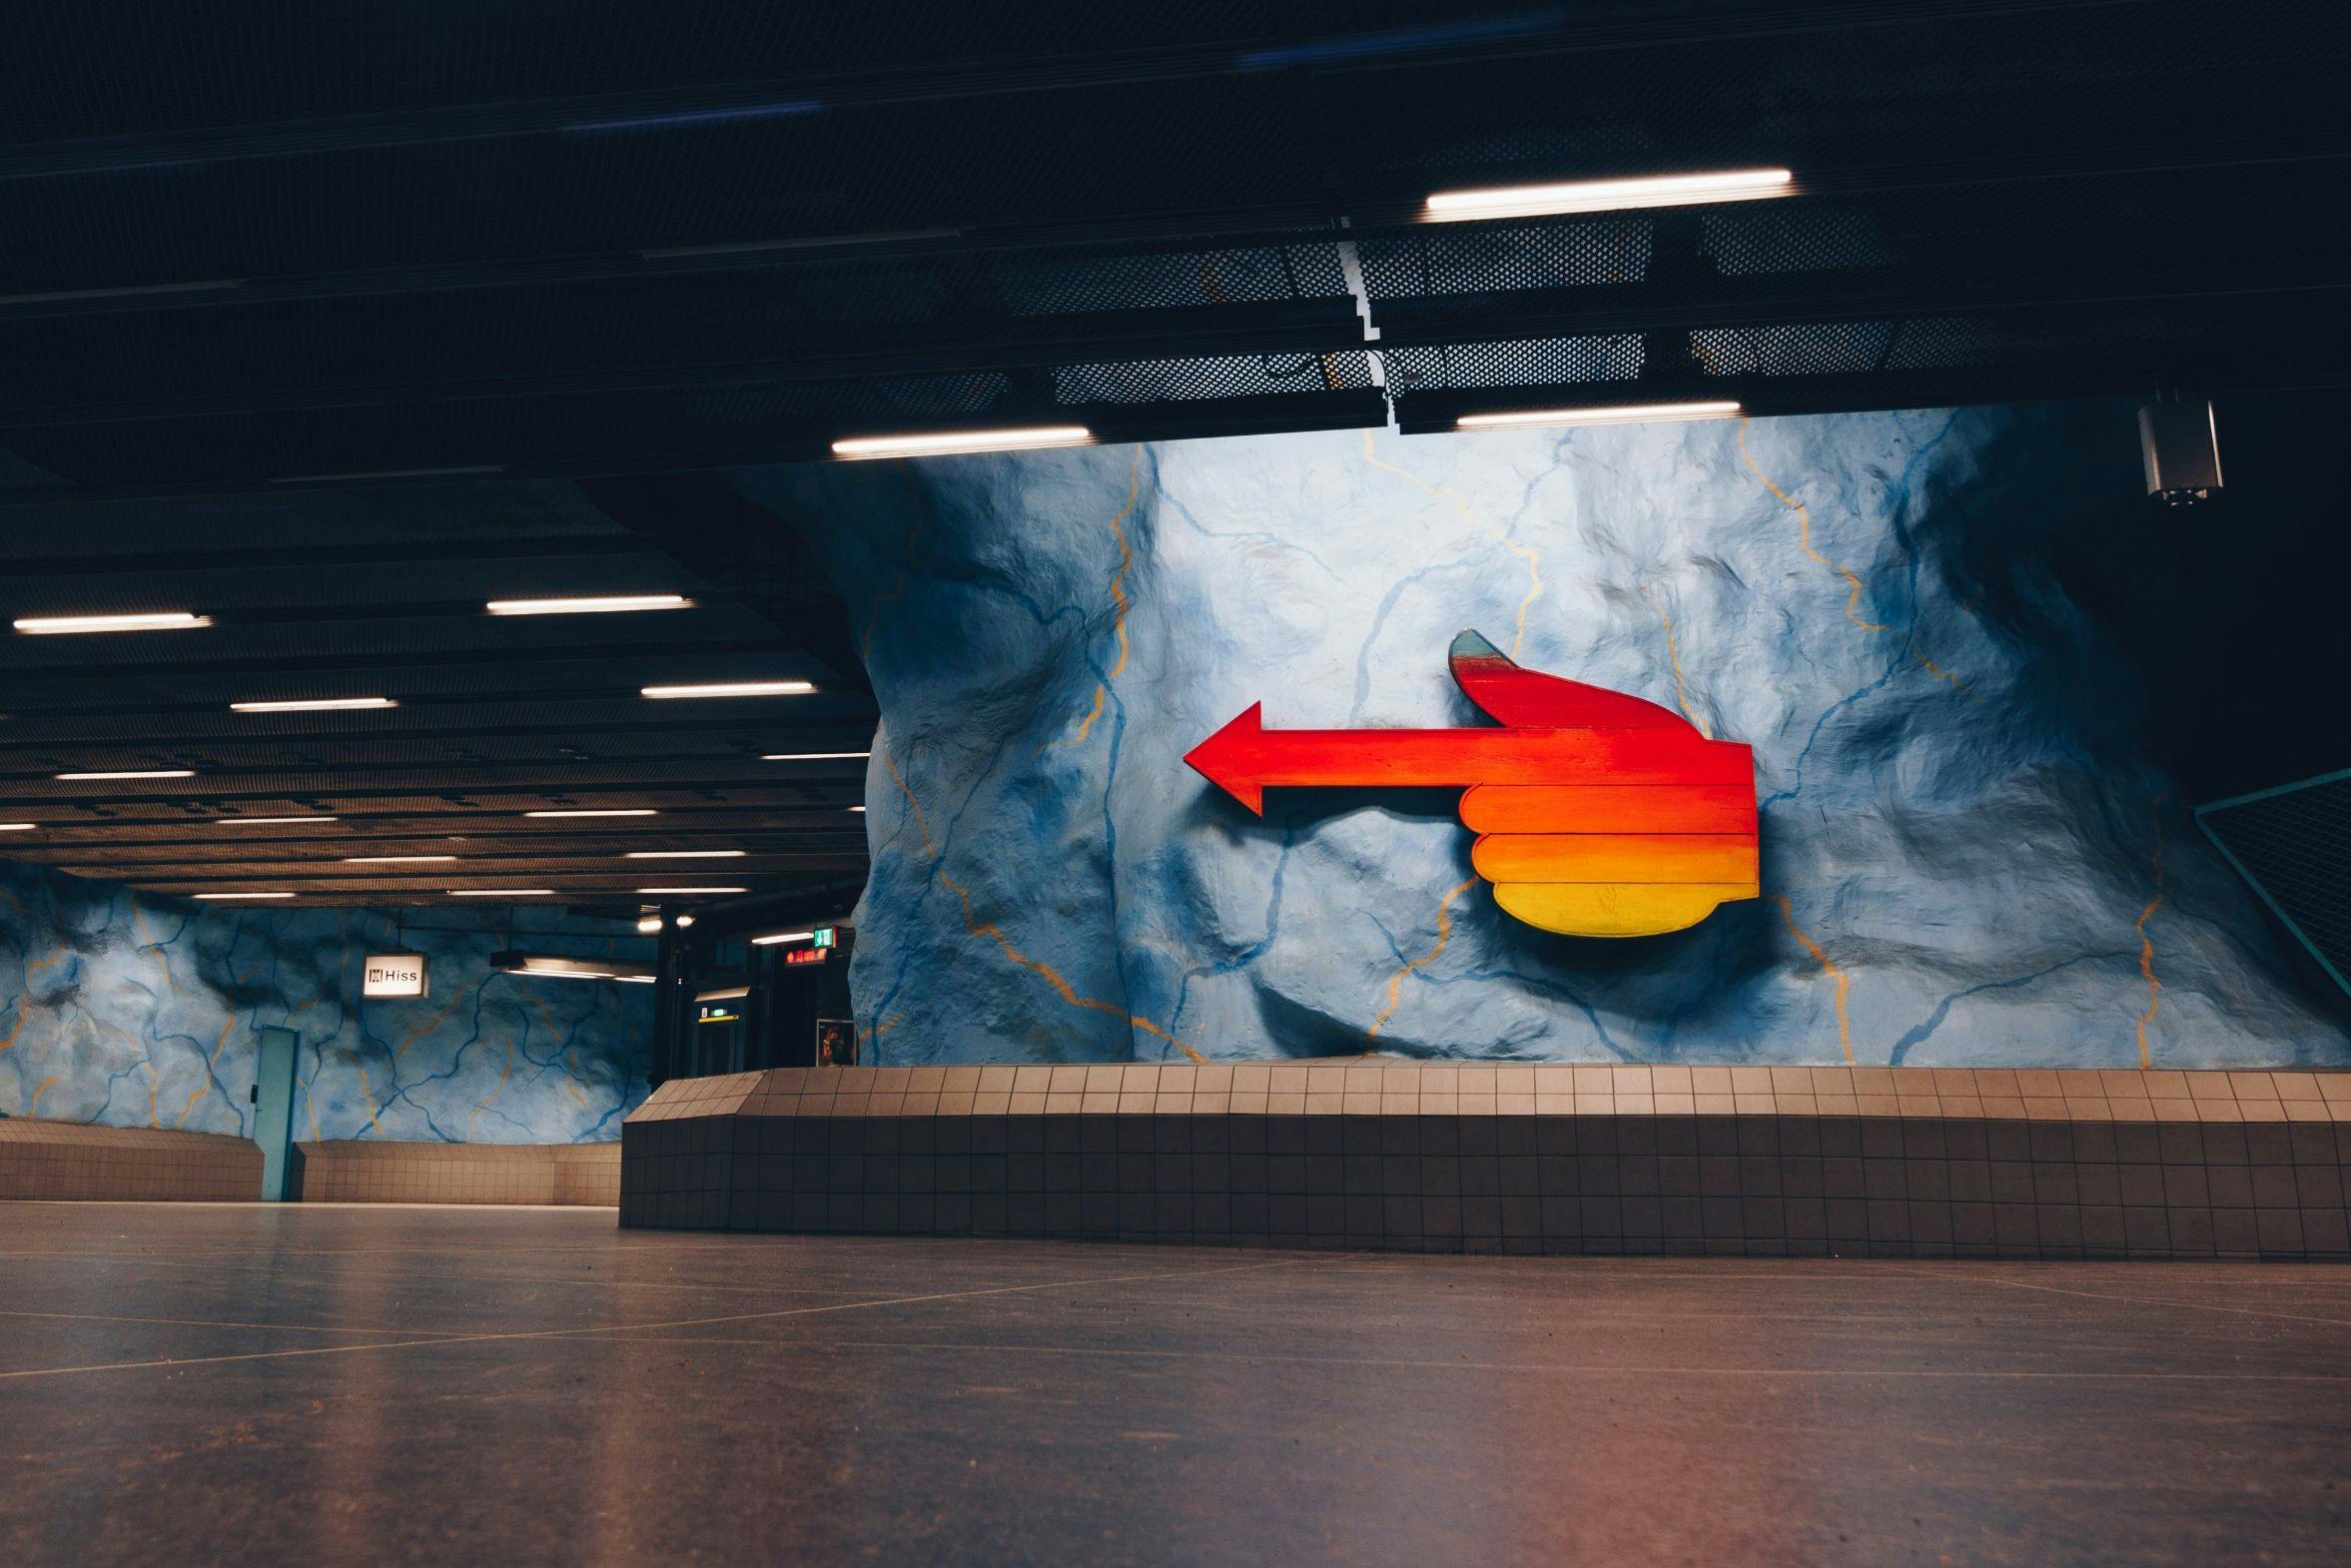 Passeio artístico no metrô subterrâneo com um morador local em Estocolmo